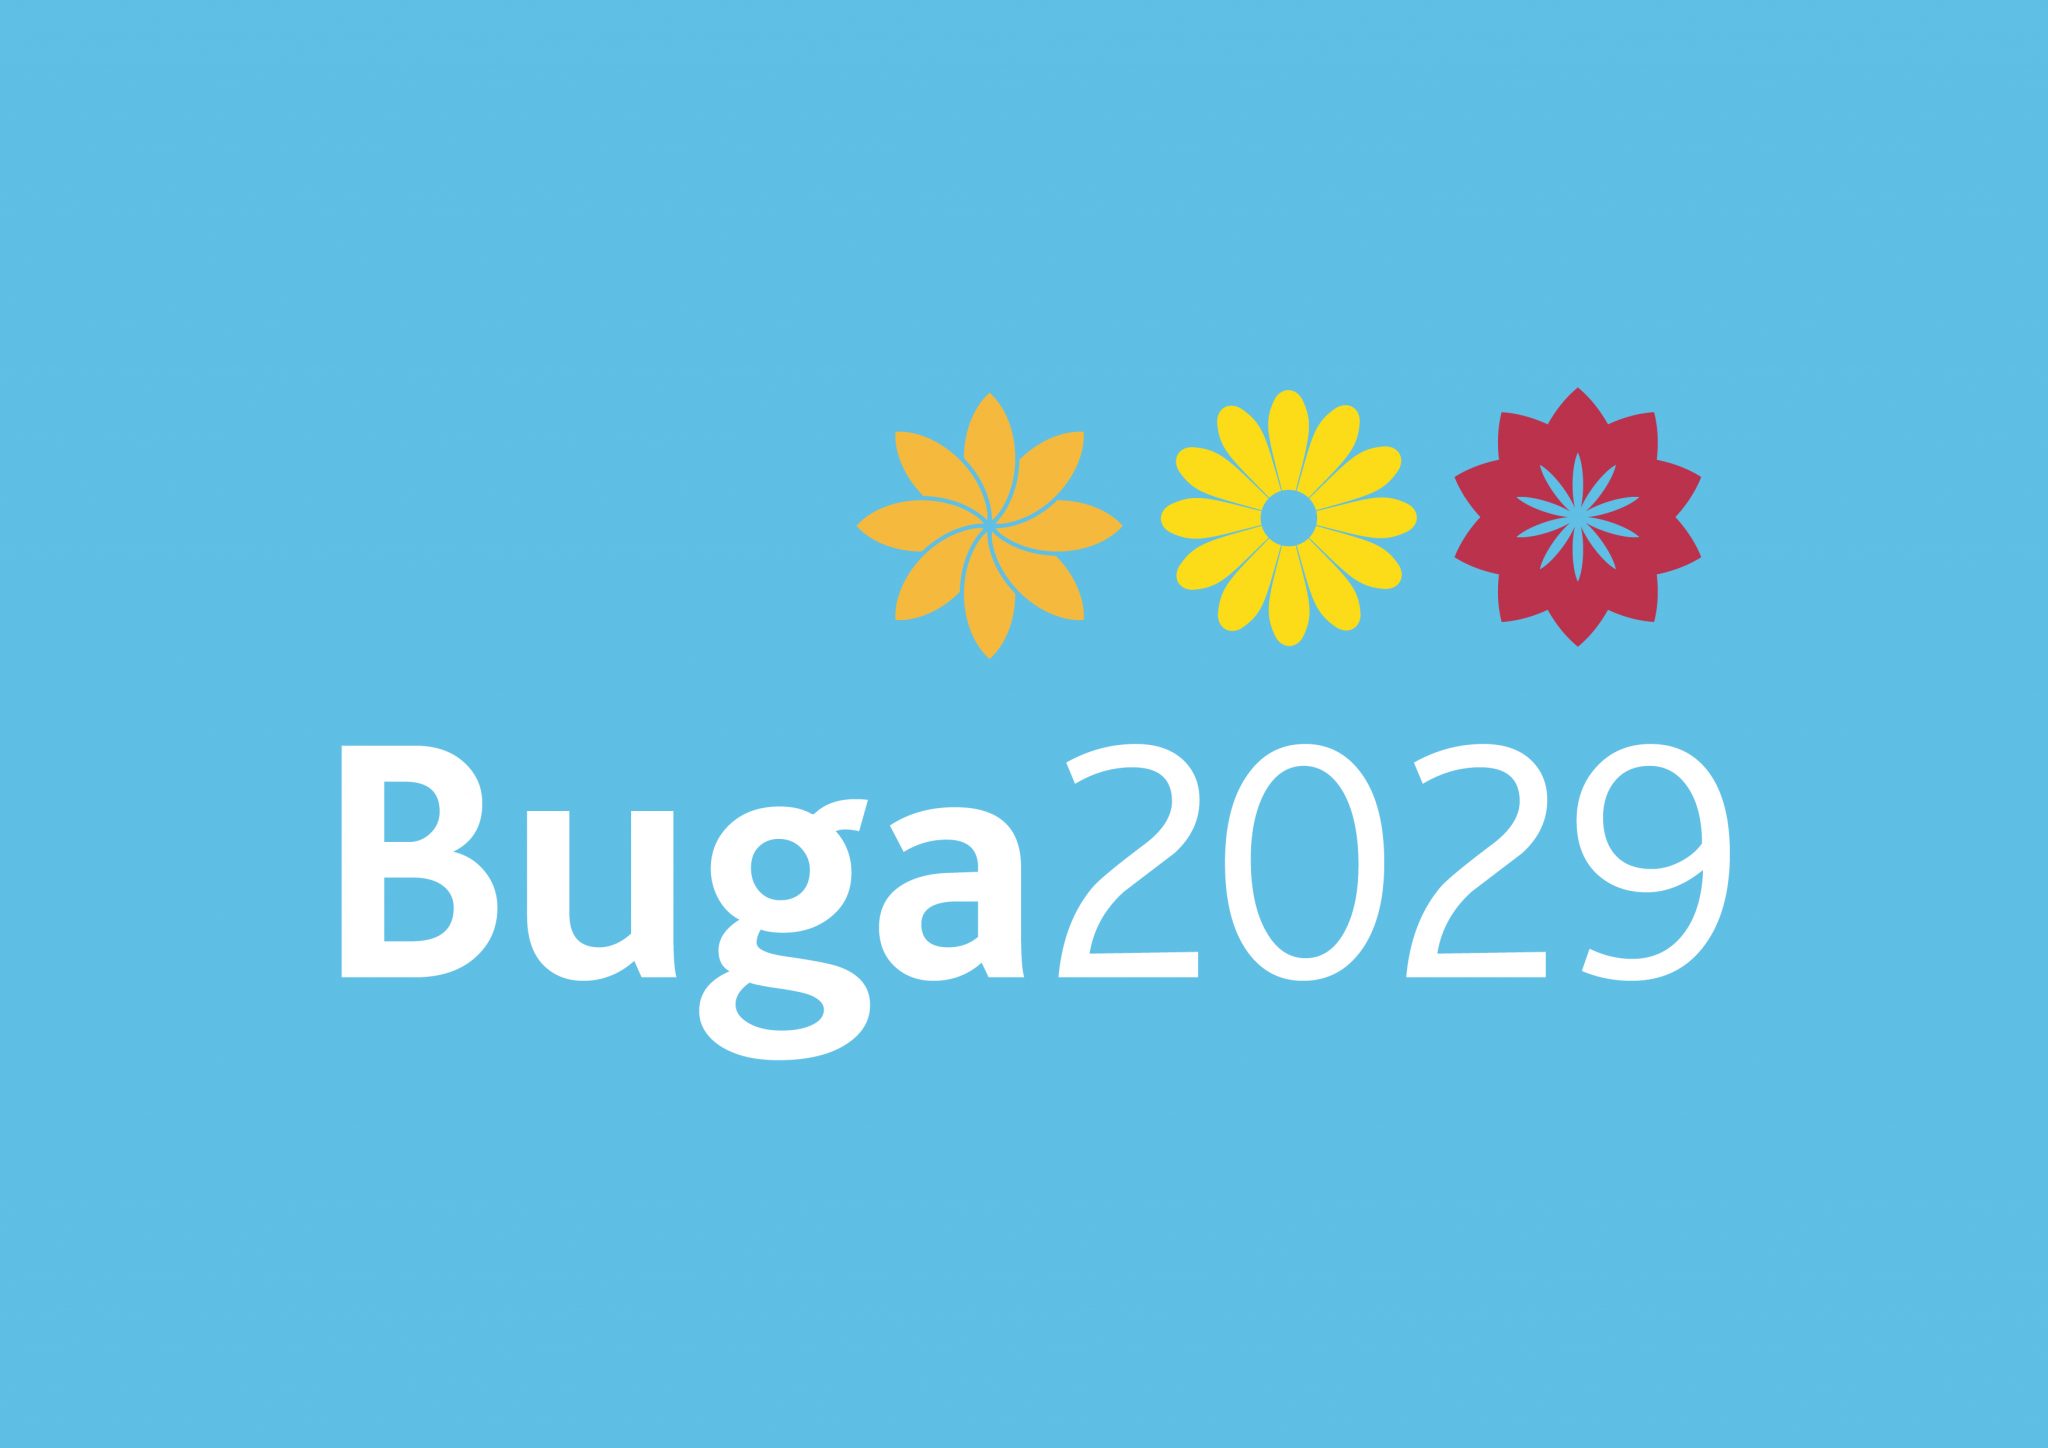 BUGA 2029